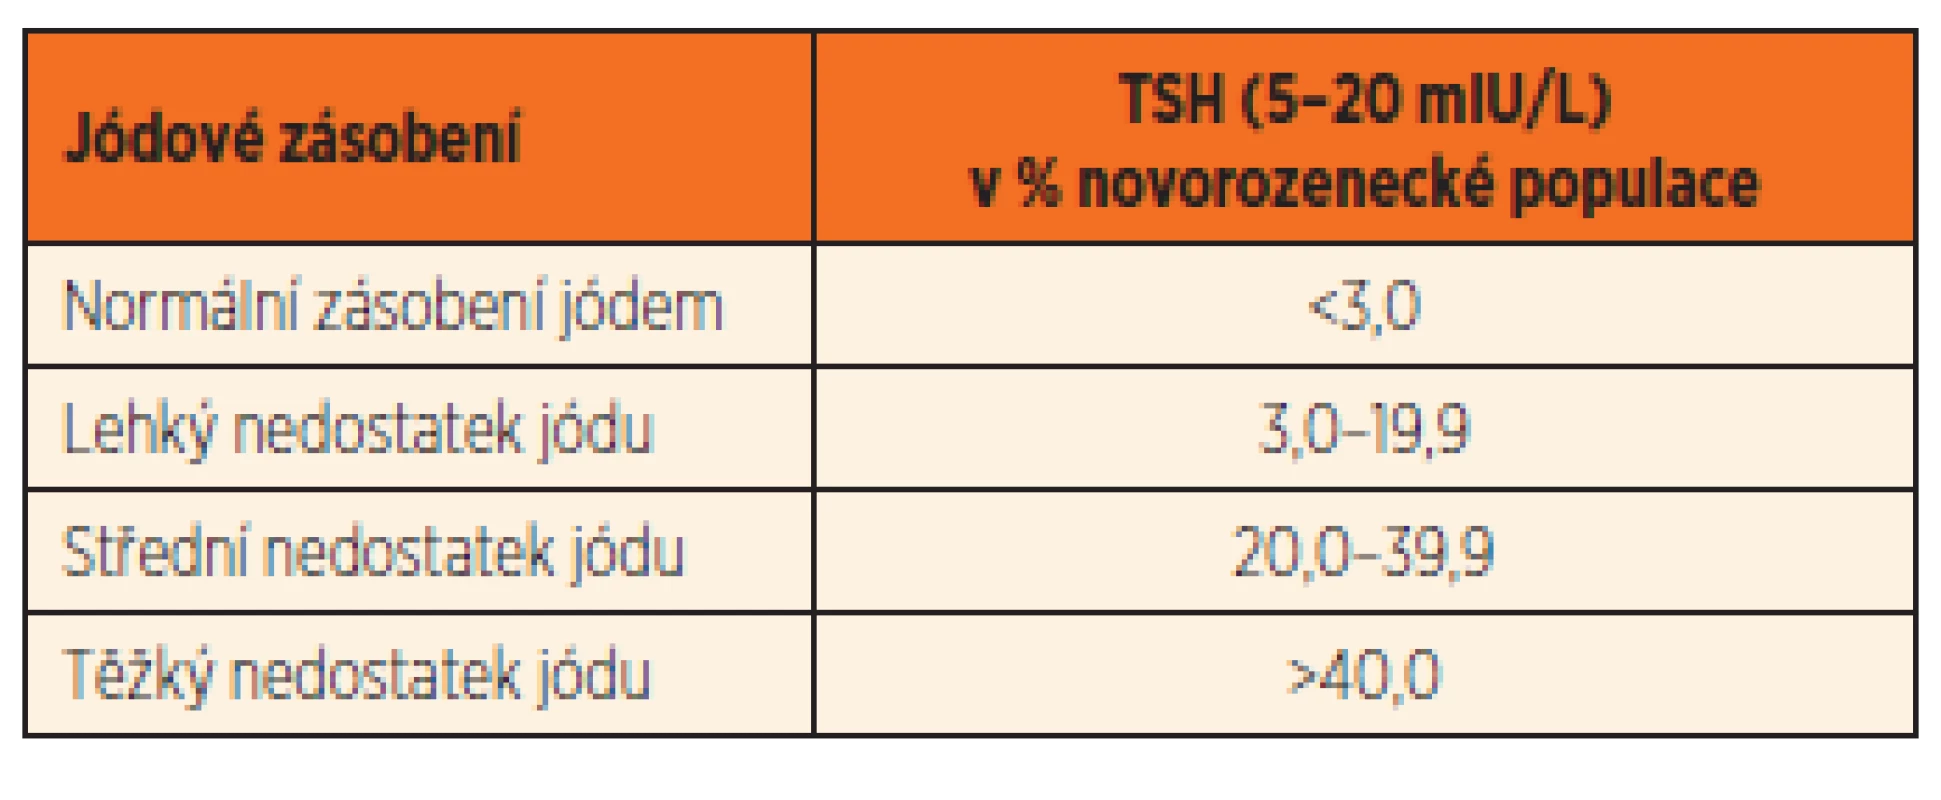 Hodnoty neonatálníhoTSH podle stupně jódového deficitu (dle: Indicators for Assesing Iodine Deficiency Disorders. WHO, ICCIDD, UNICEF, 1994: 1–53).